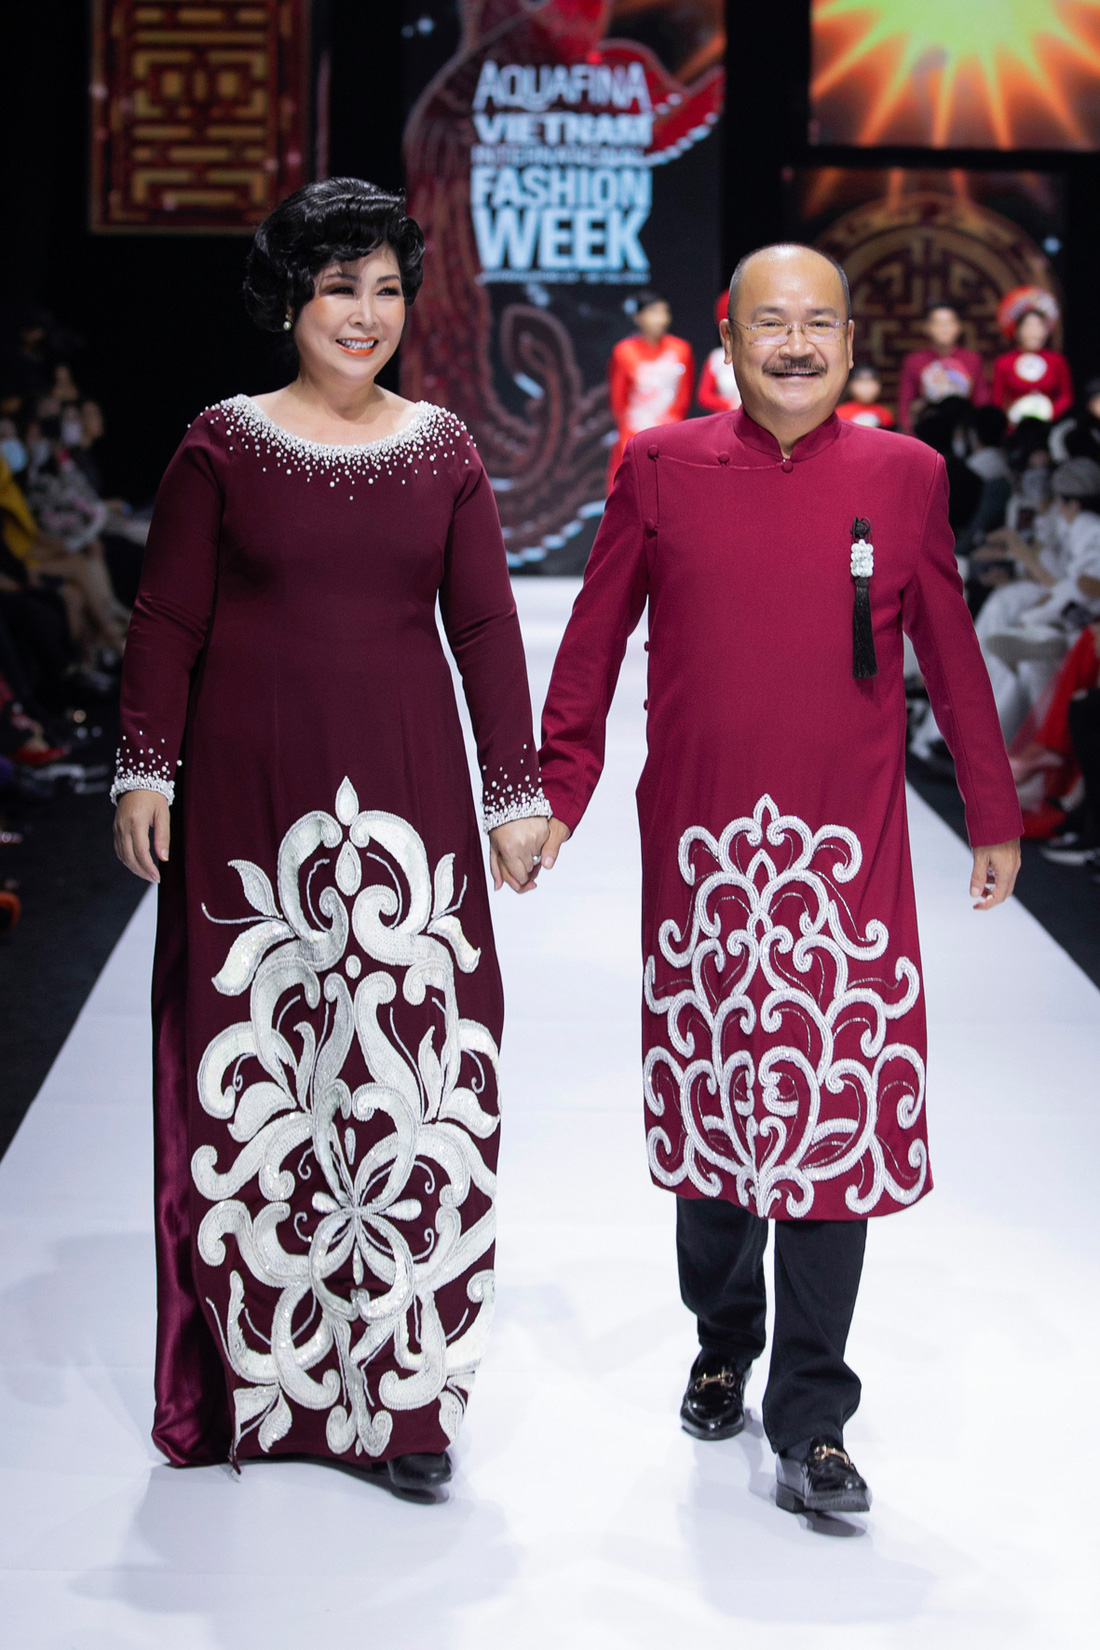 Hoa hậu Khánh Vân làm vedette, NSND Hồng Vân làm người mẫu catwalk cho nhà thiết kế Minh Châu - Ảnh 3.